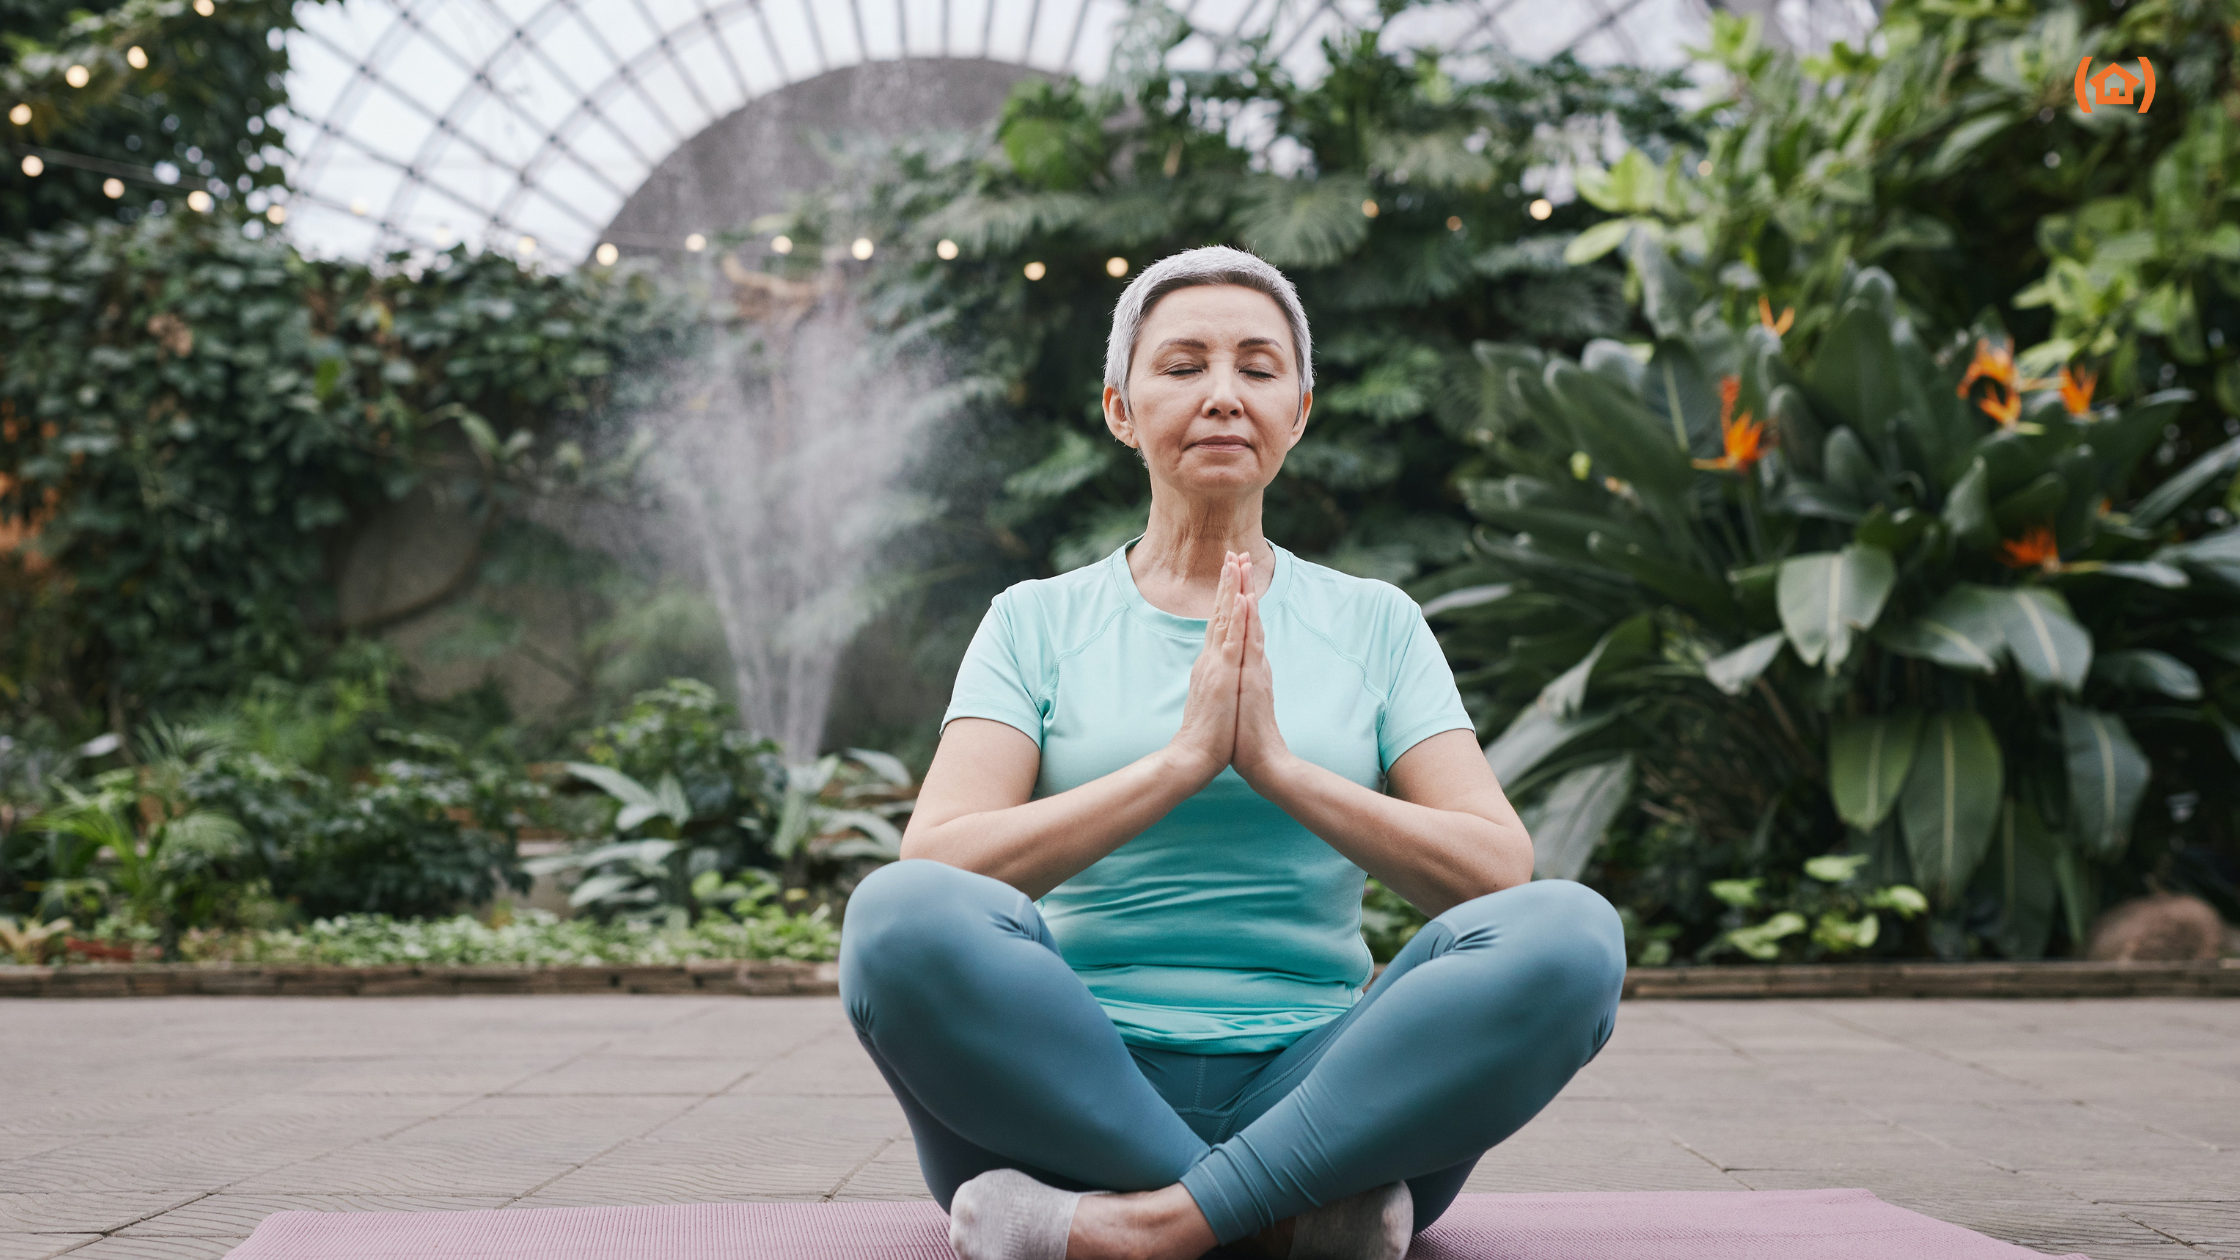 La meditación para adultos mayores ofrece mejoras tanto físicos como psicológicos. En el artículo de hoy te contamos sus principales beneficios.